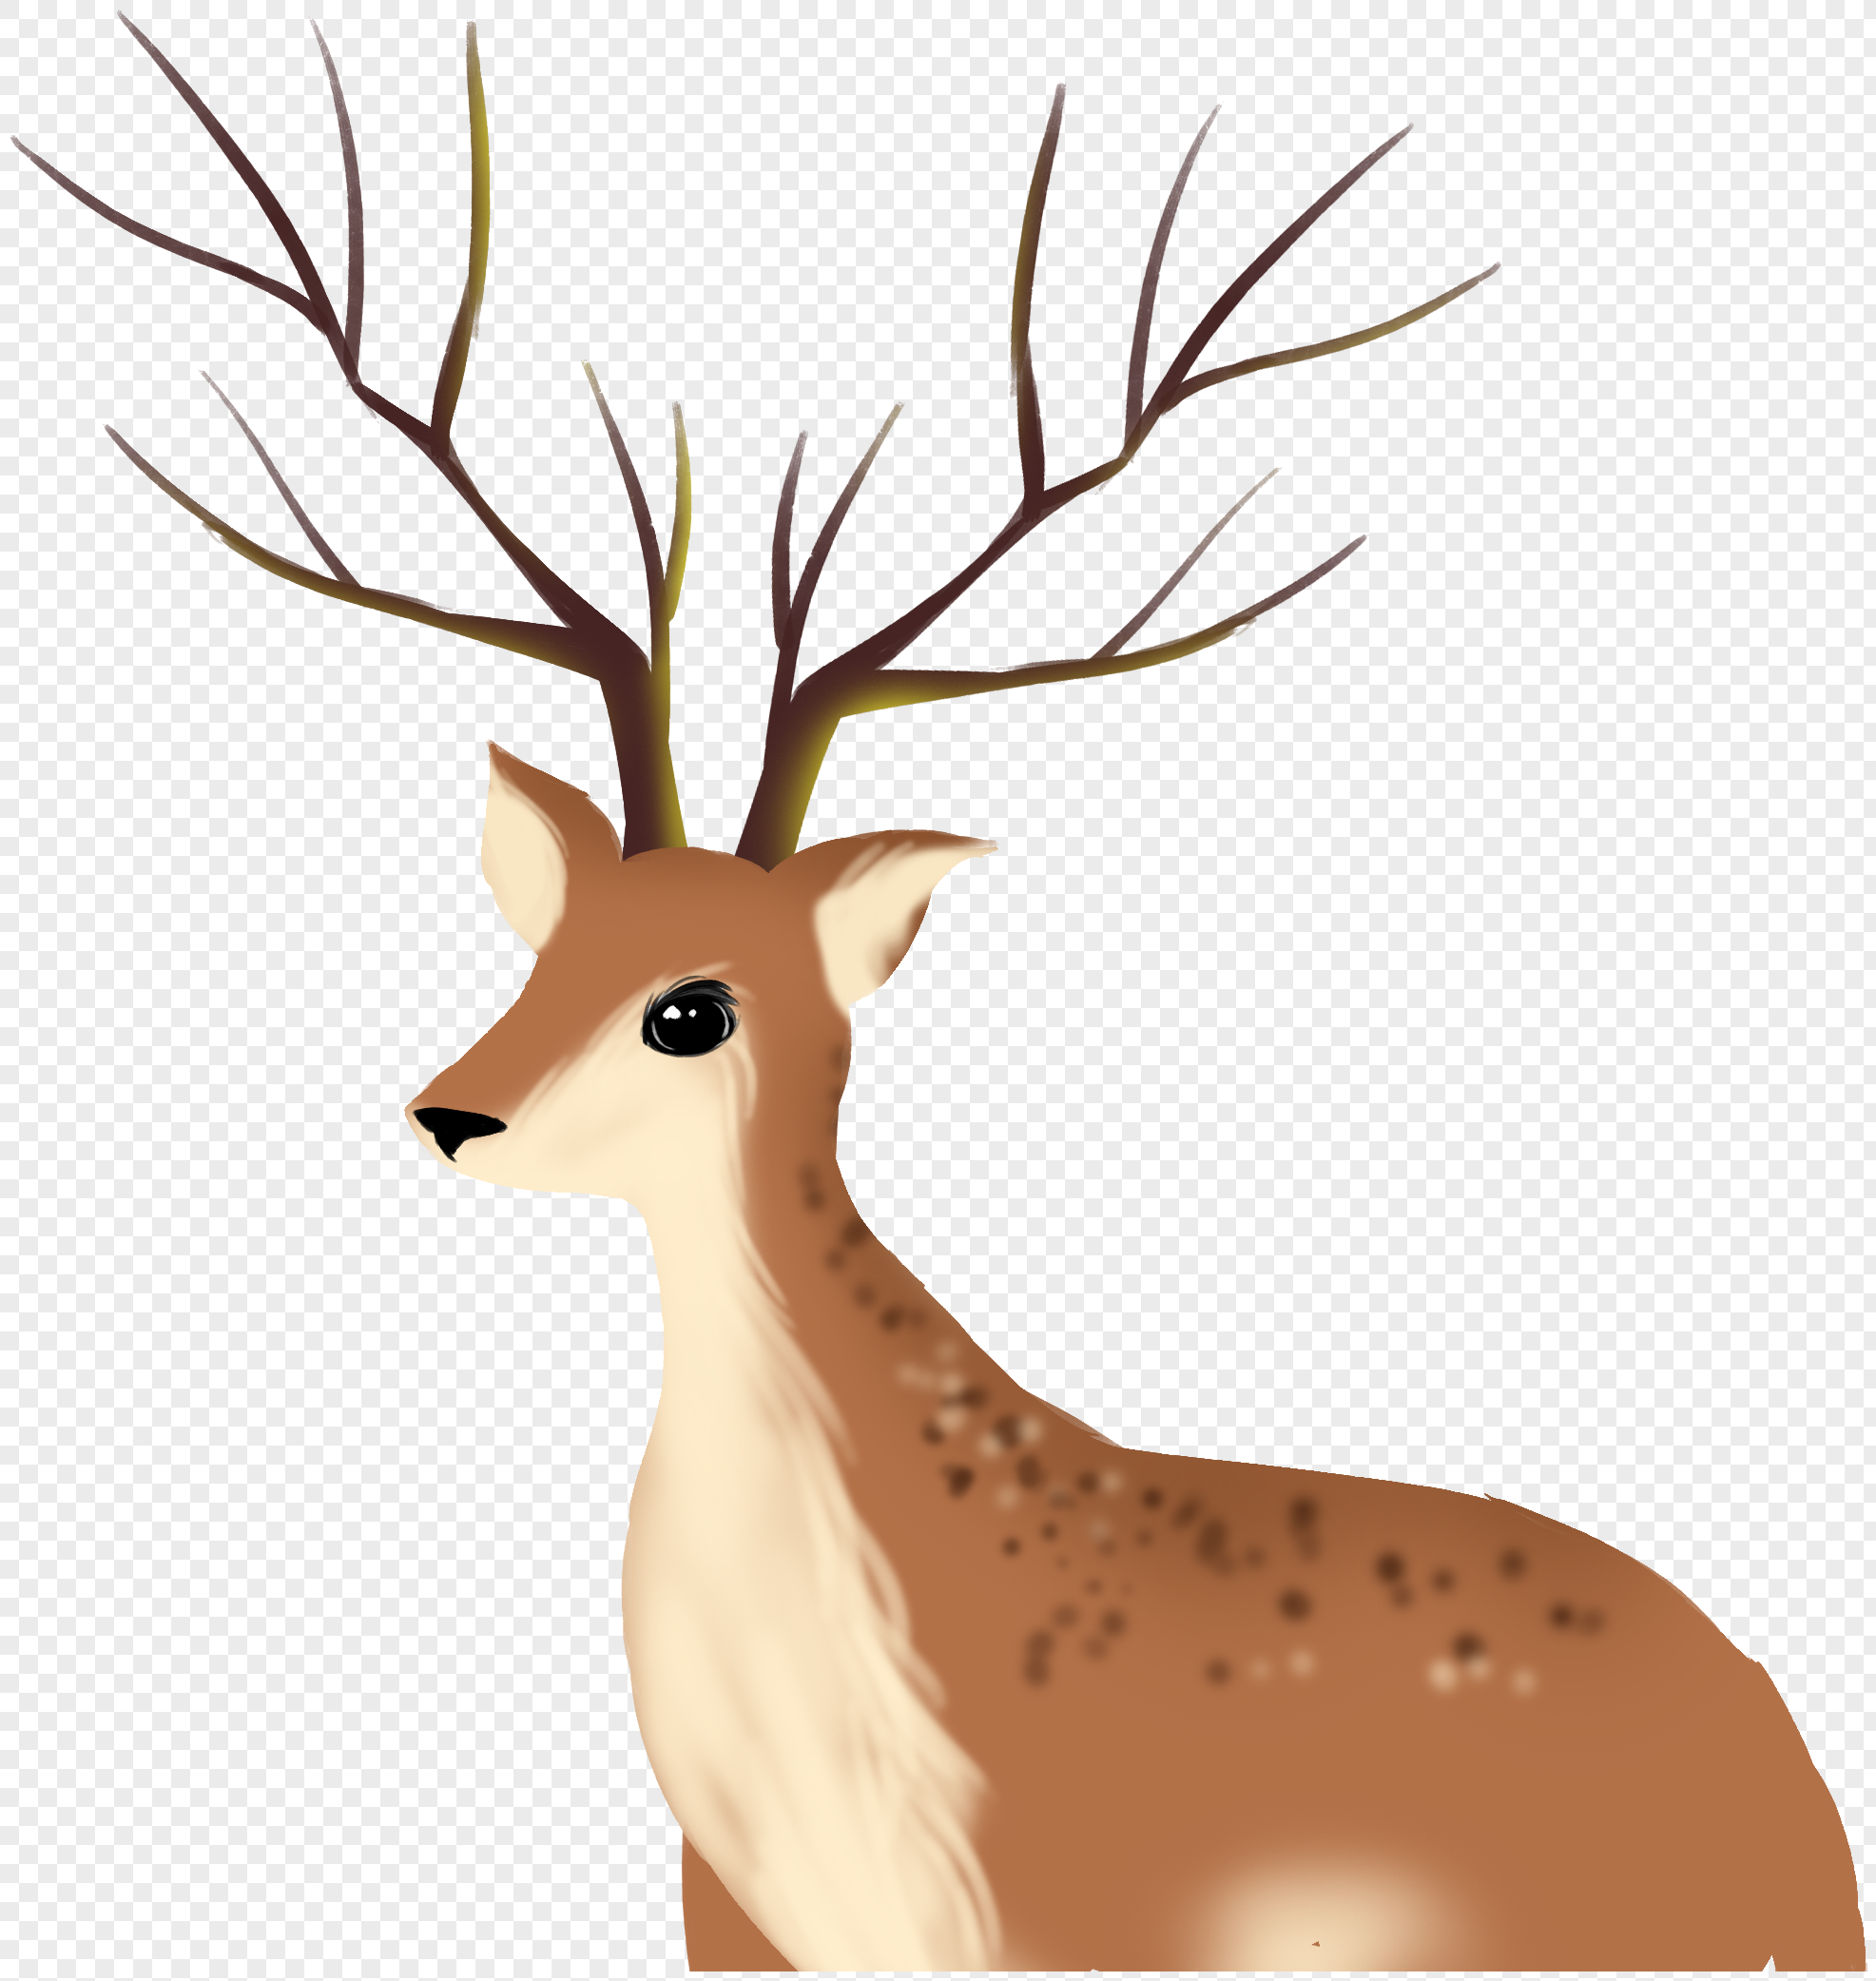 一只梅花鹿的头部绘制出许多多彩的花瓣动物素材设计